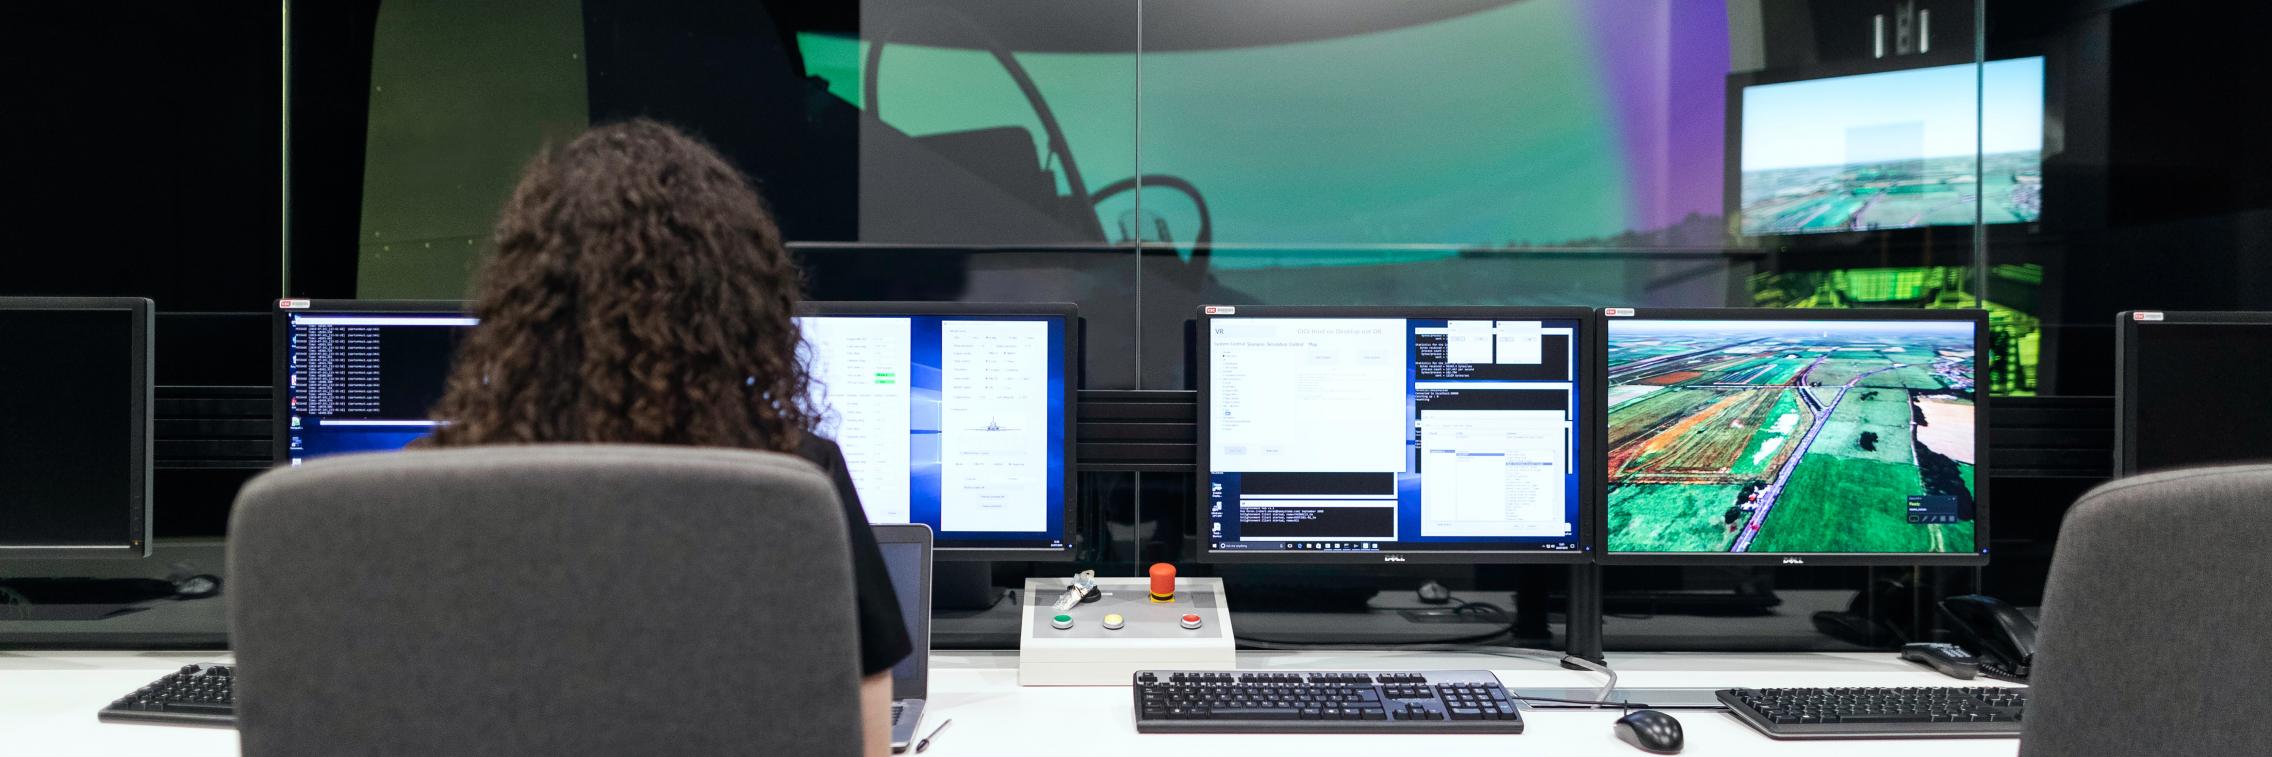 A woman sits at several computer monitors